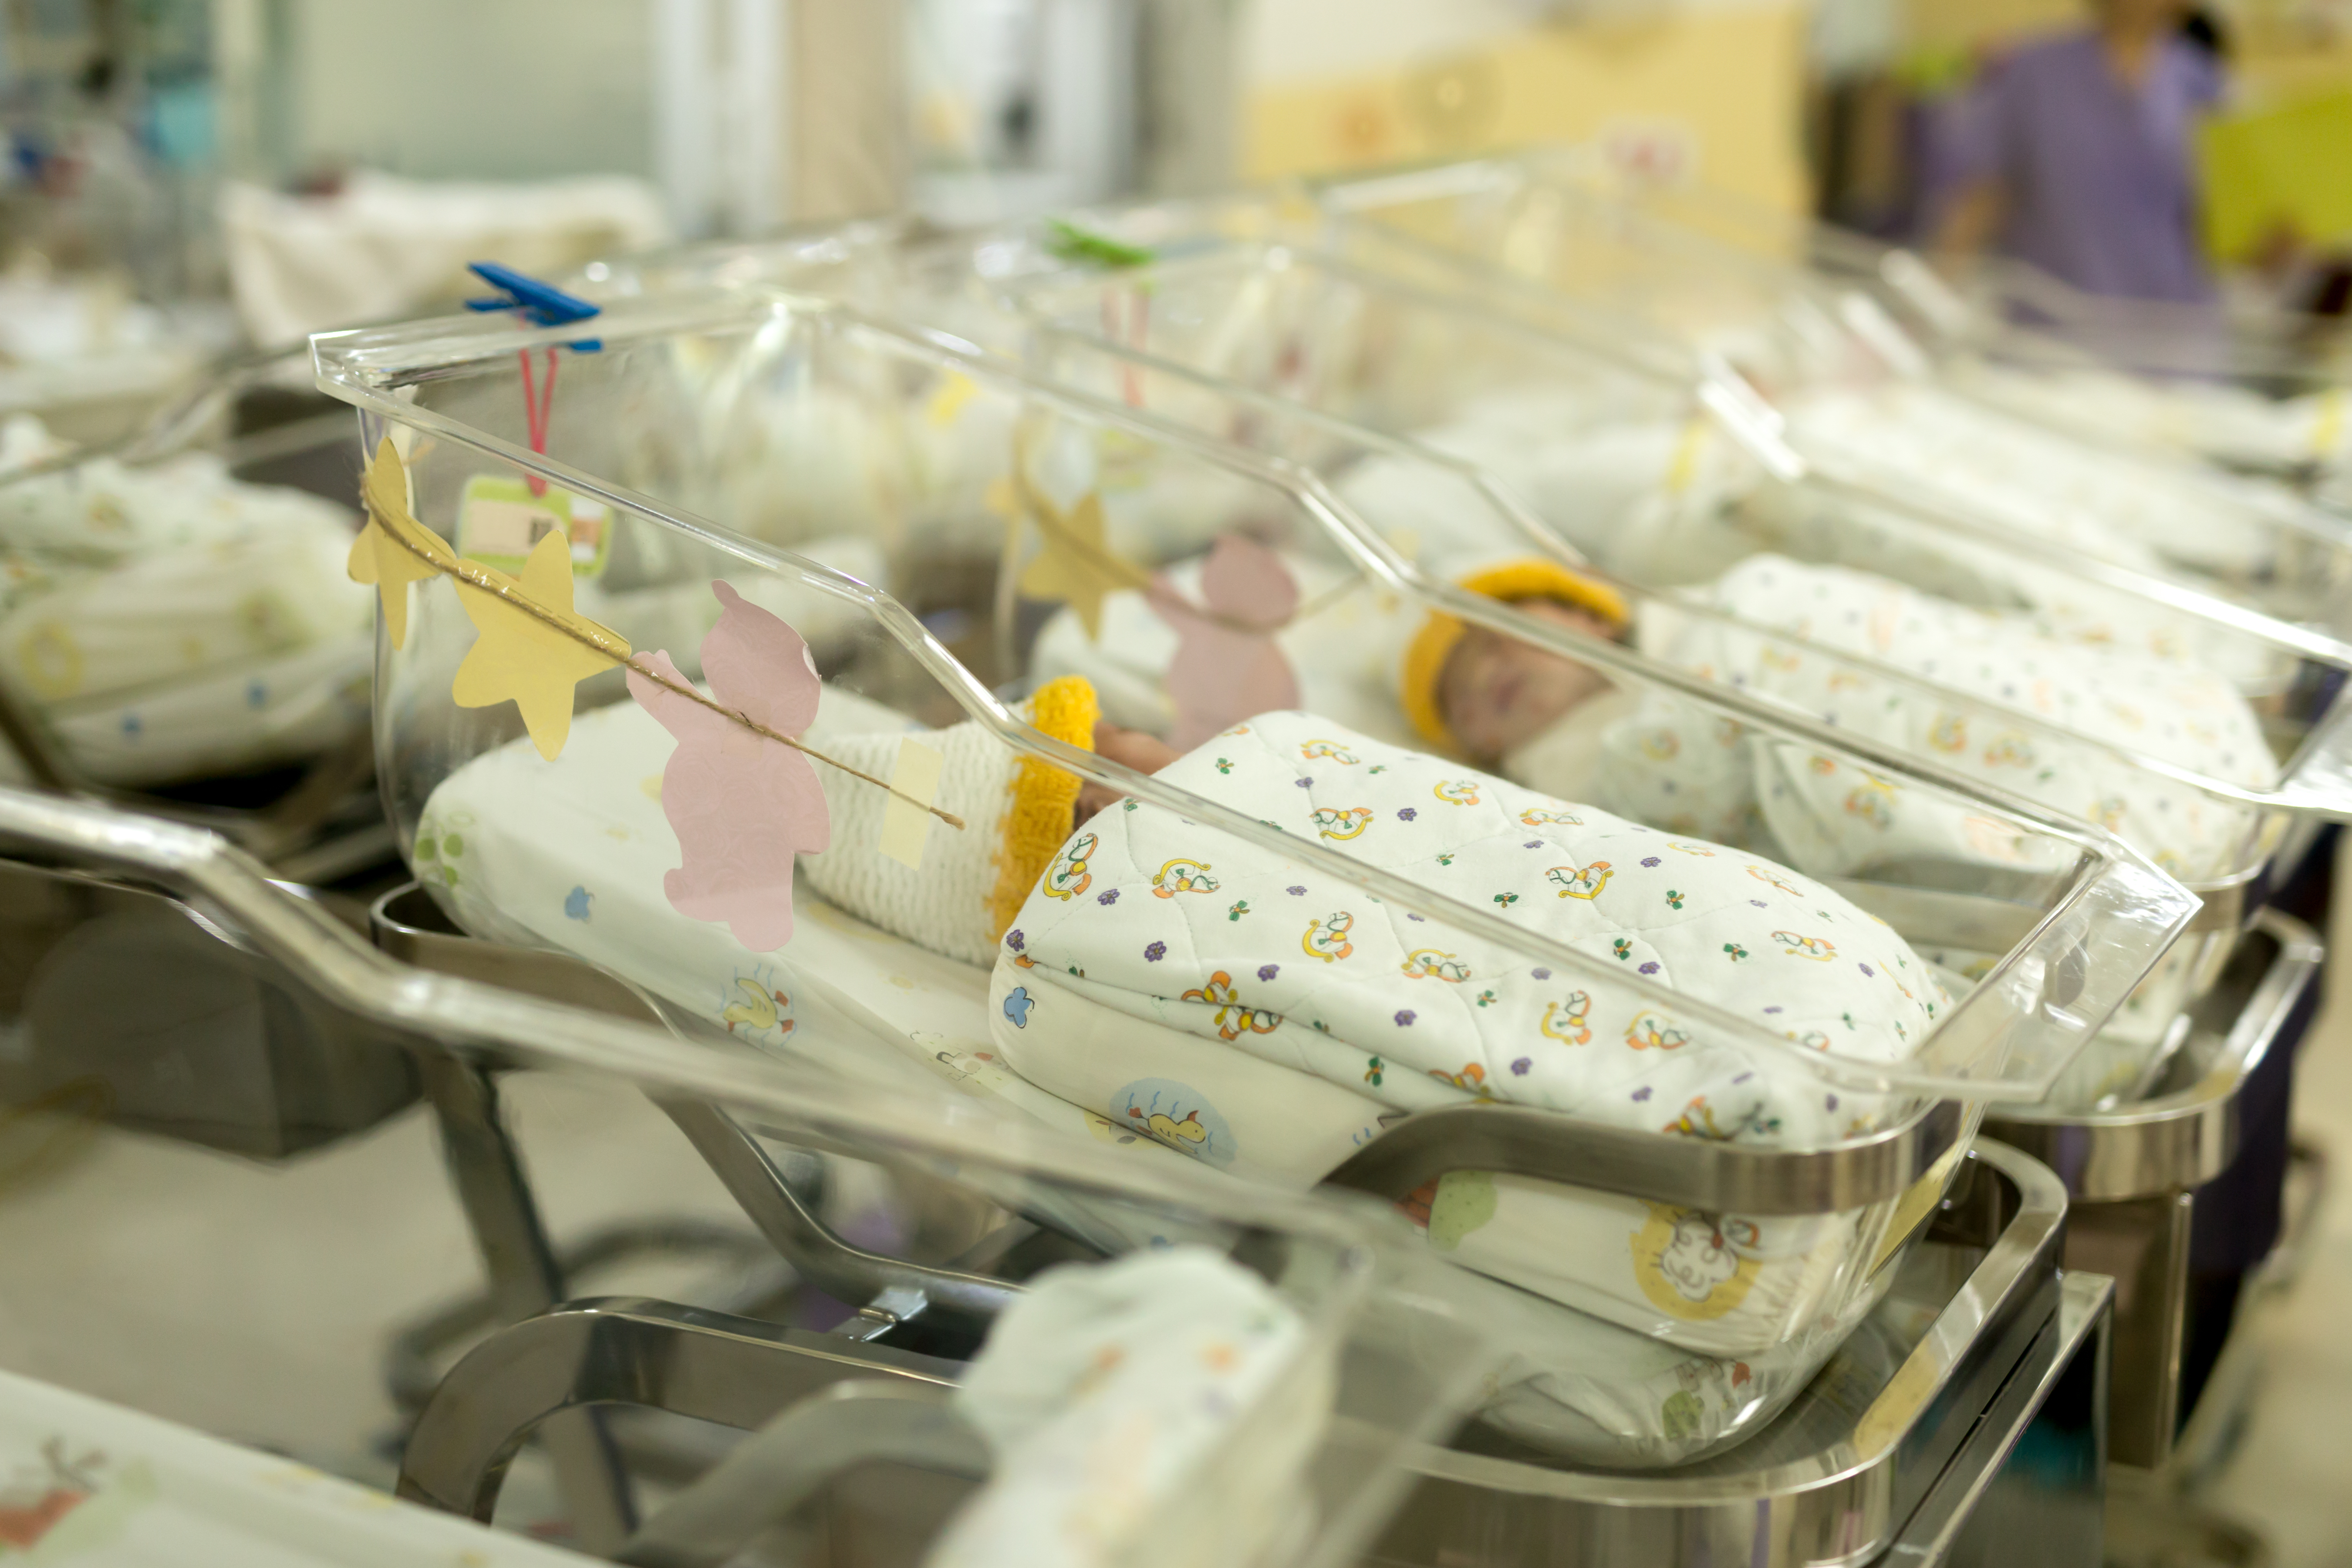 Newborn babies in a hospital nursery | Source: Shutterstock